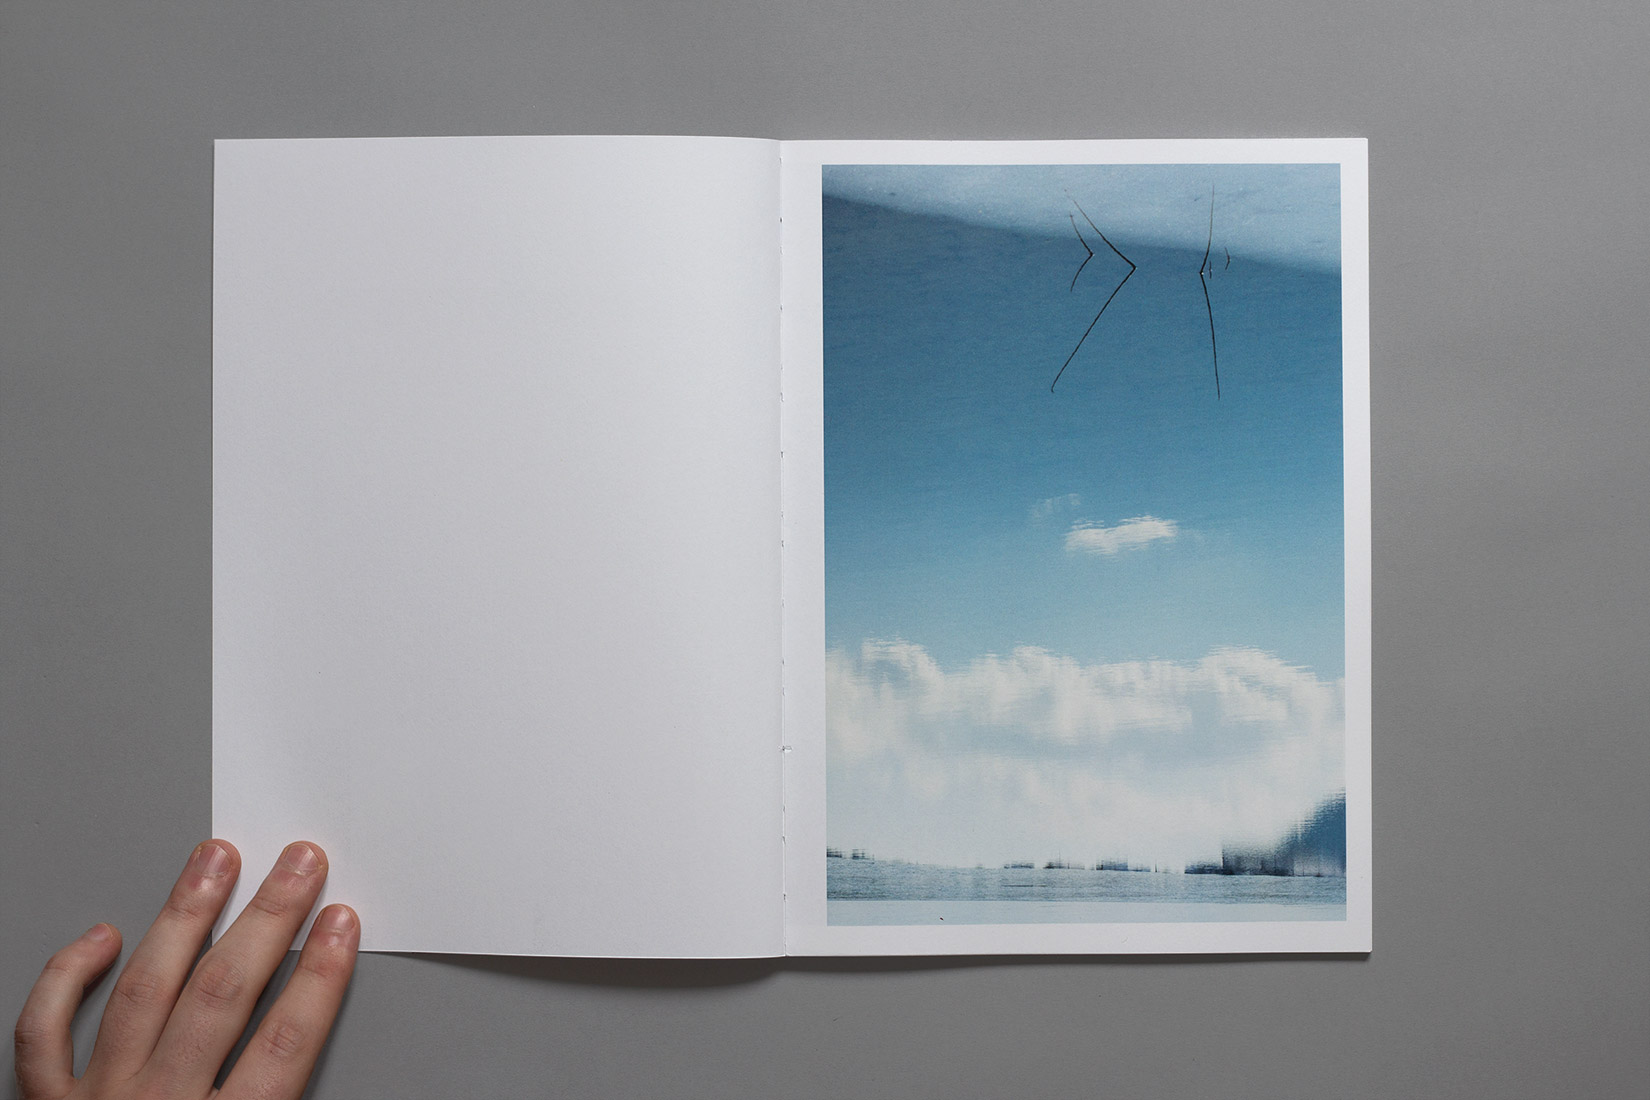 Lac des brenets - Reflet, glace, hiver, Livre, photographie